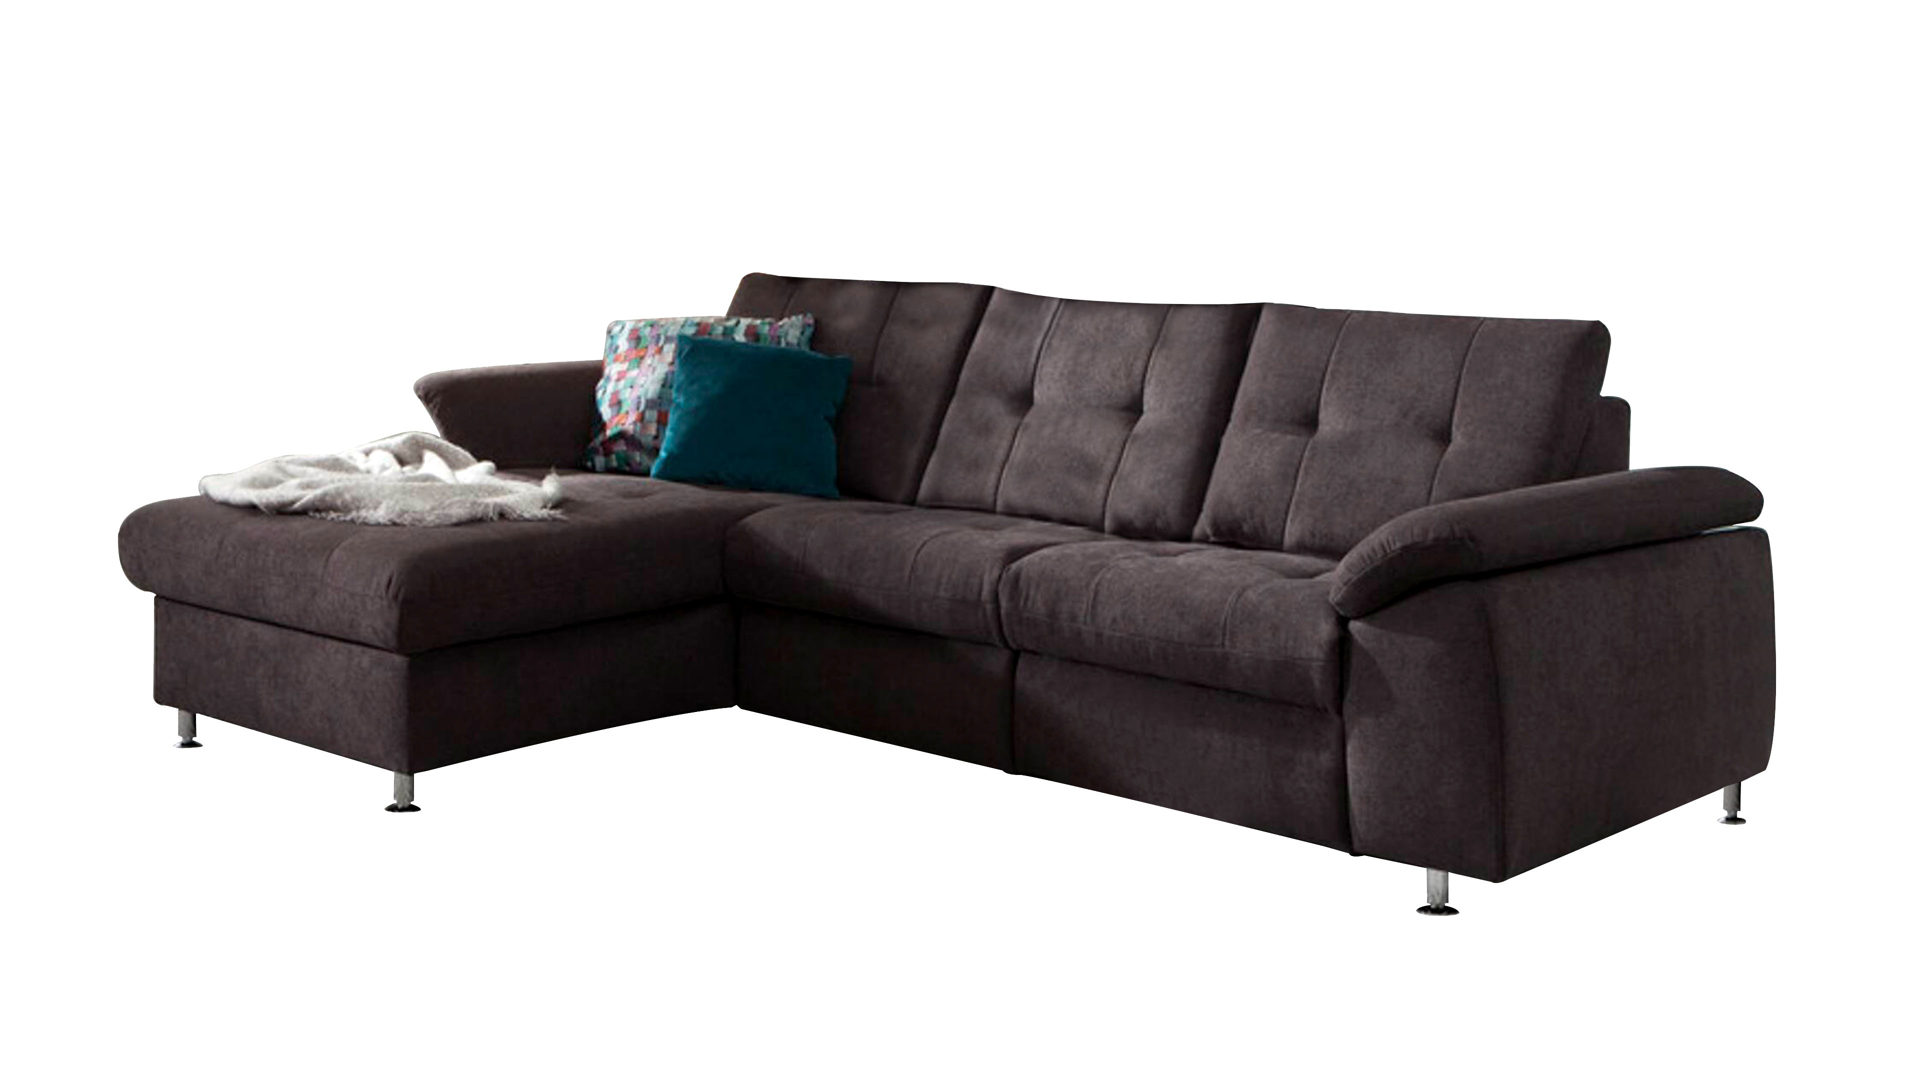 Ecksofa Megapol aus Stoff in Anthrazit Eckkombination VS-MP1056 aus Canape Sofa und Couch anthrazitfarbener Bezug Nemo & Metallfüße – Stellfläche ca. 169 x 261 cm